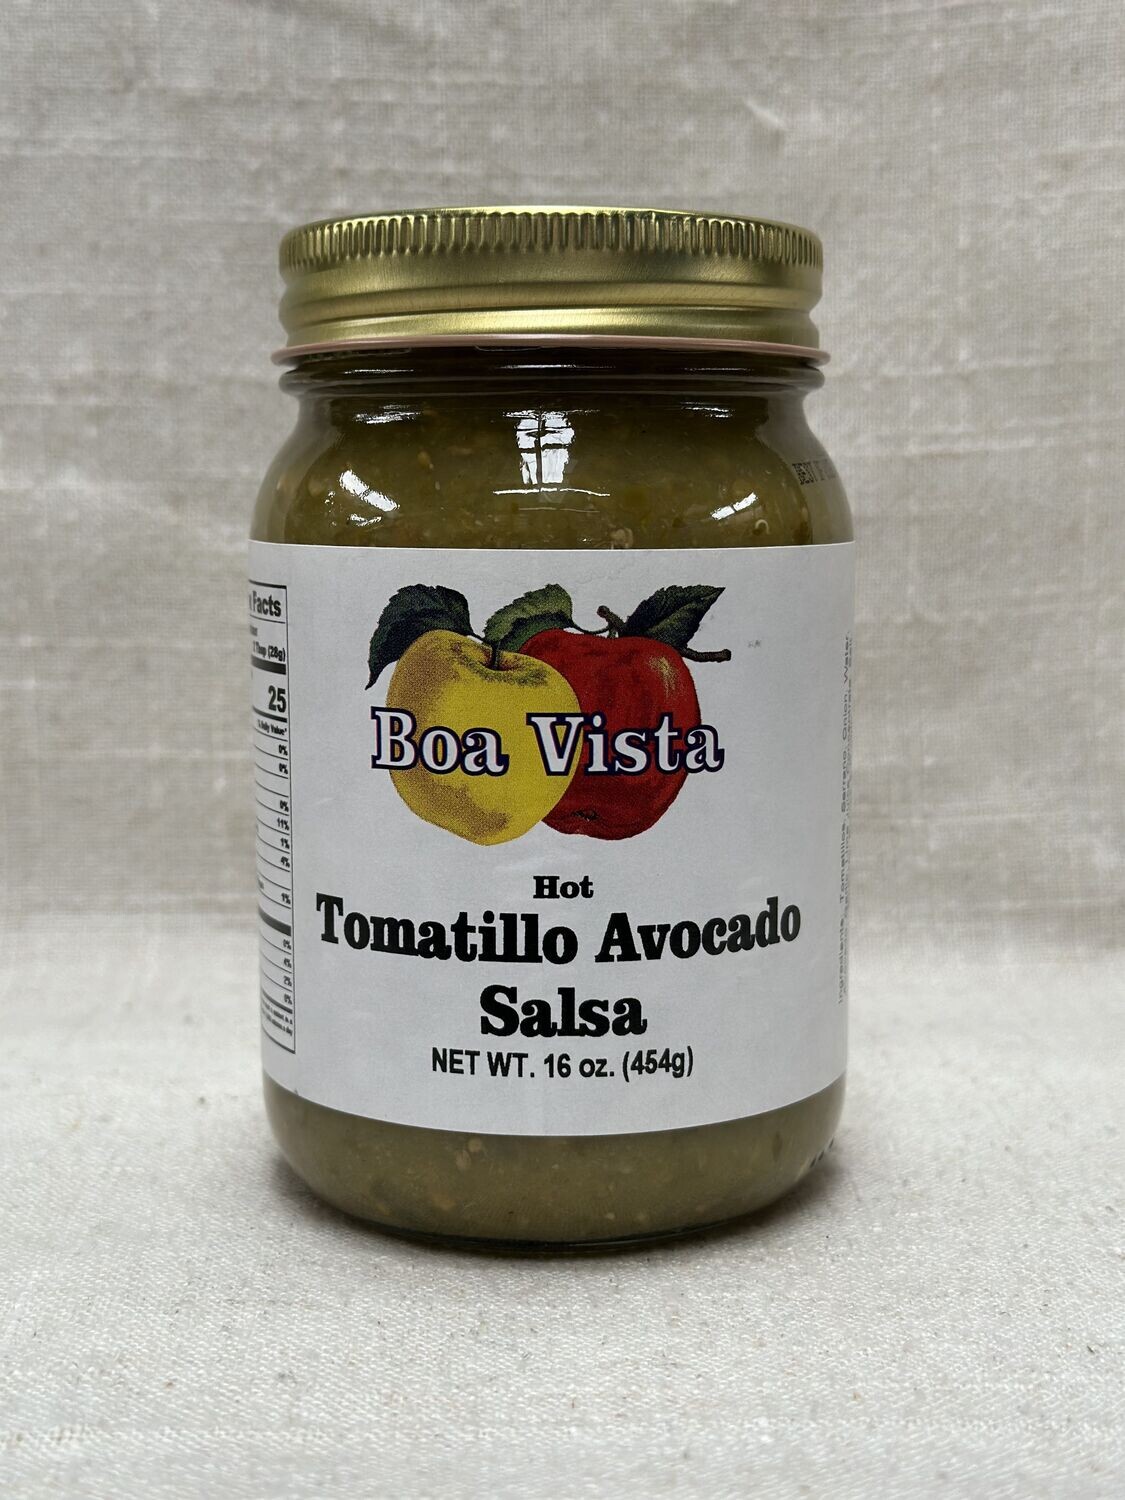 Hot Tomatillo Avocado Salsa